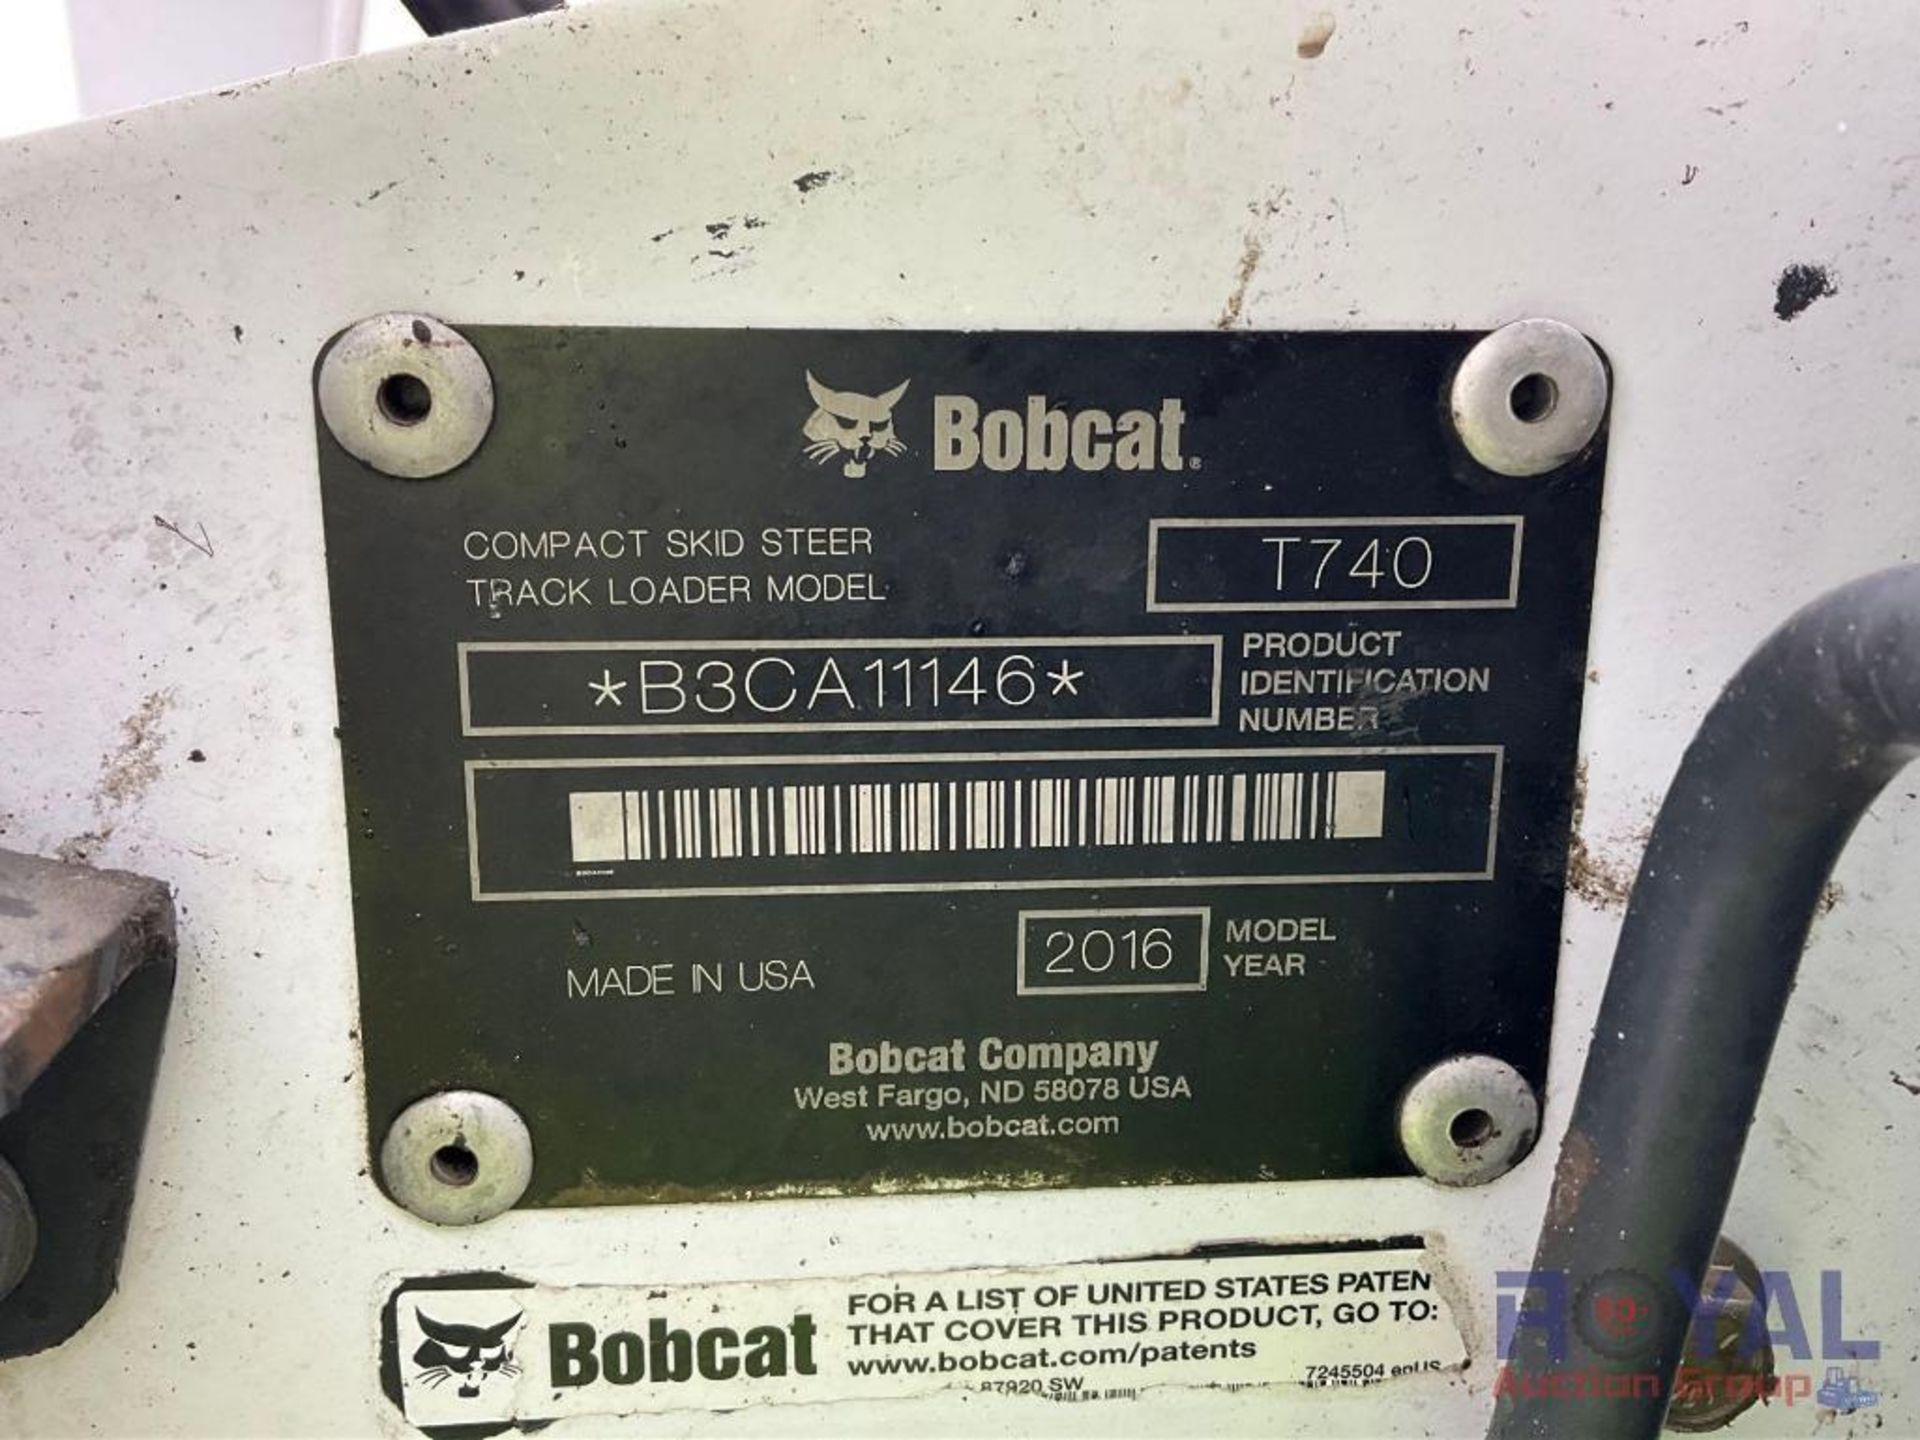 2016 Bobcat T740 Compact Track Loader Skid Steer - Image 5 of 24